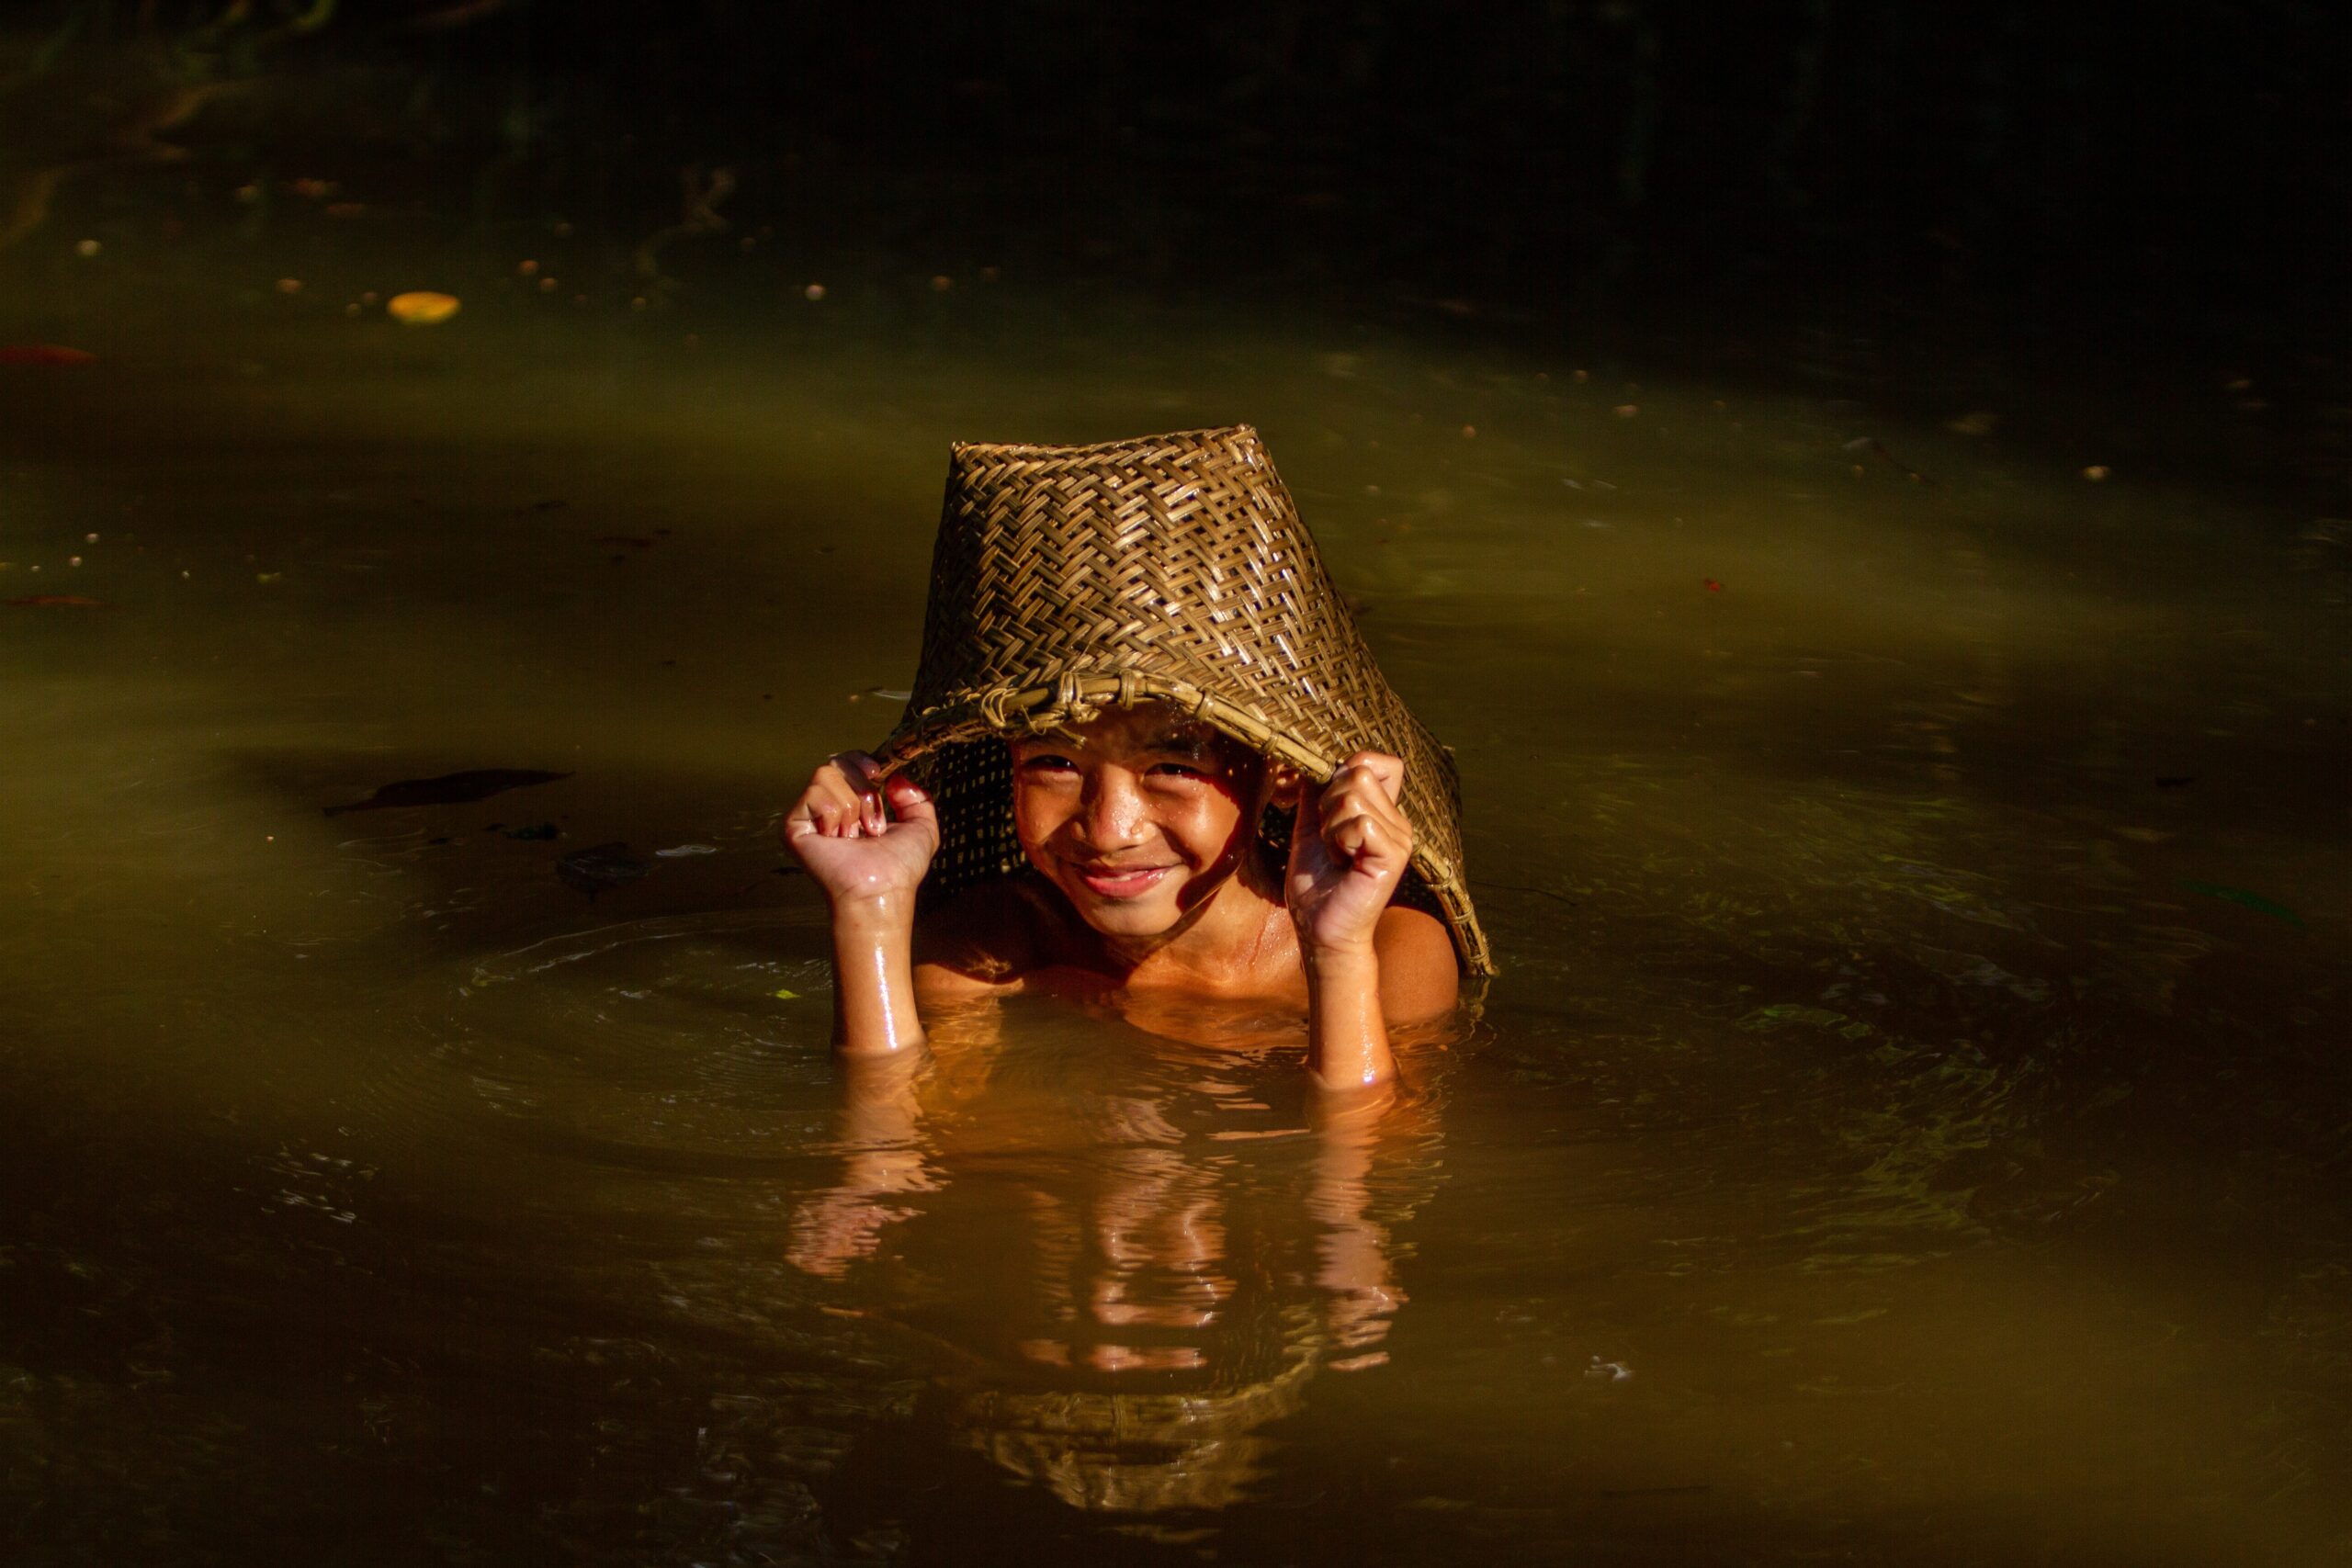 Niño del pueblo Dayak  Kebhan de Indonesia jugando en el río. 
Ganadores del Concurso de Fotografía “Soluciones Innovadoras de Pueblos Indígenas”
Nombre de la foto: Dayak Kebhan Children. Autor: Victor Fidelis Sentosa